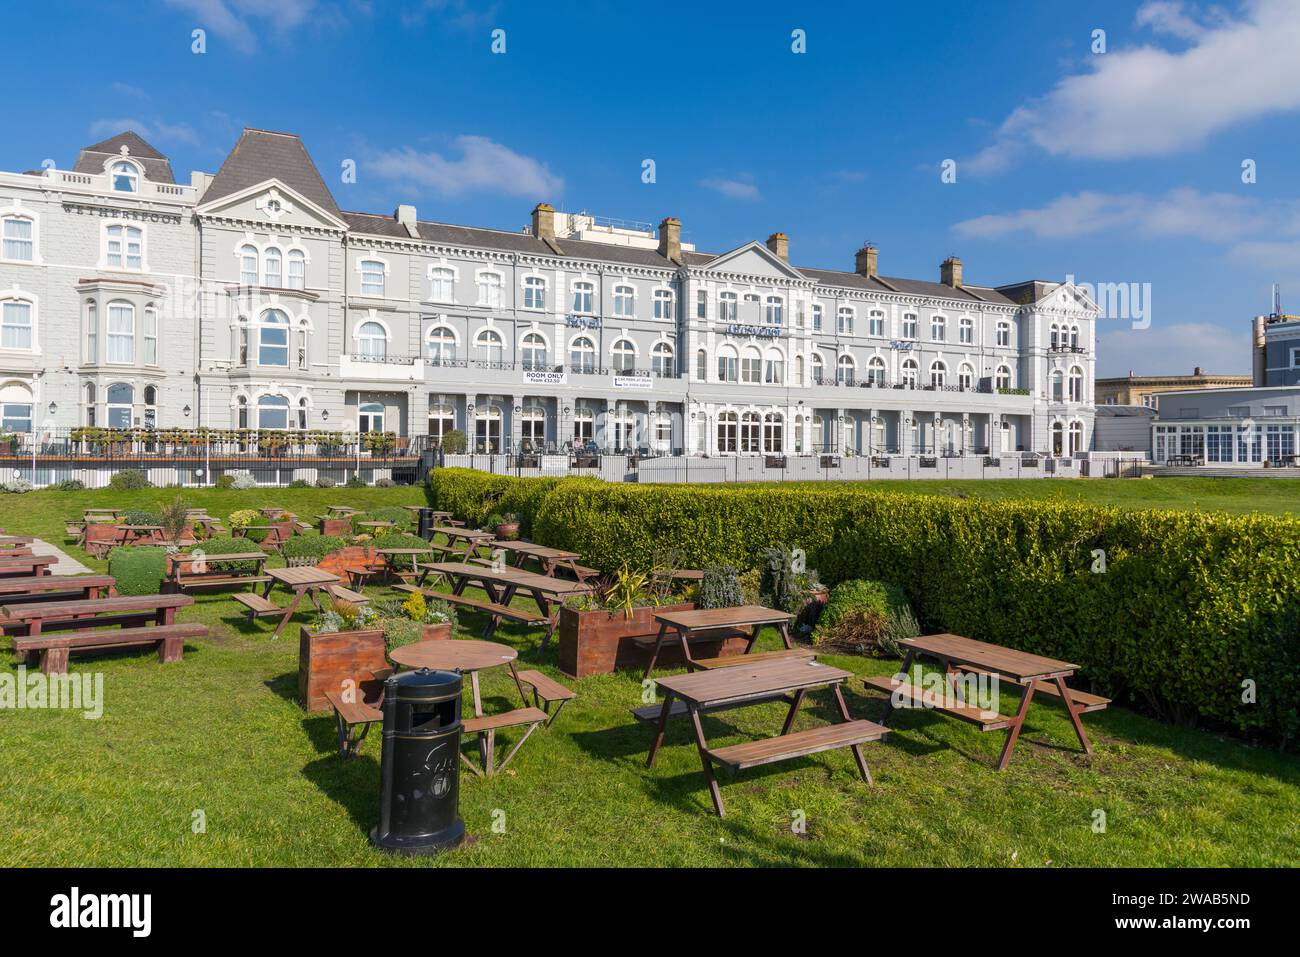 L'hôtel Grosvenor sur le front de mer de la ville balnéaire Weston-super-Mare, North Somerset, Angleterre. Banque D'Images